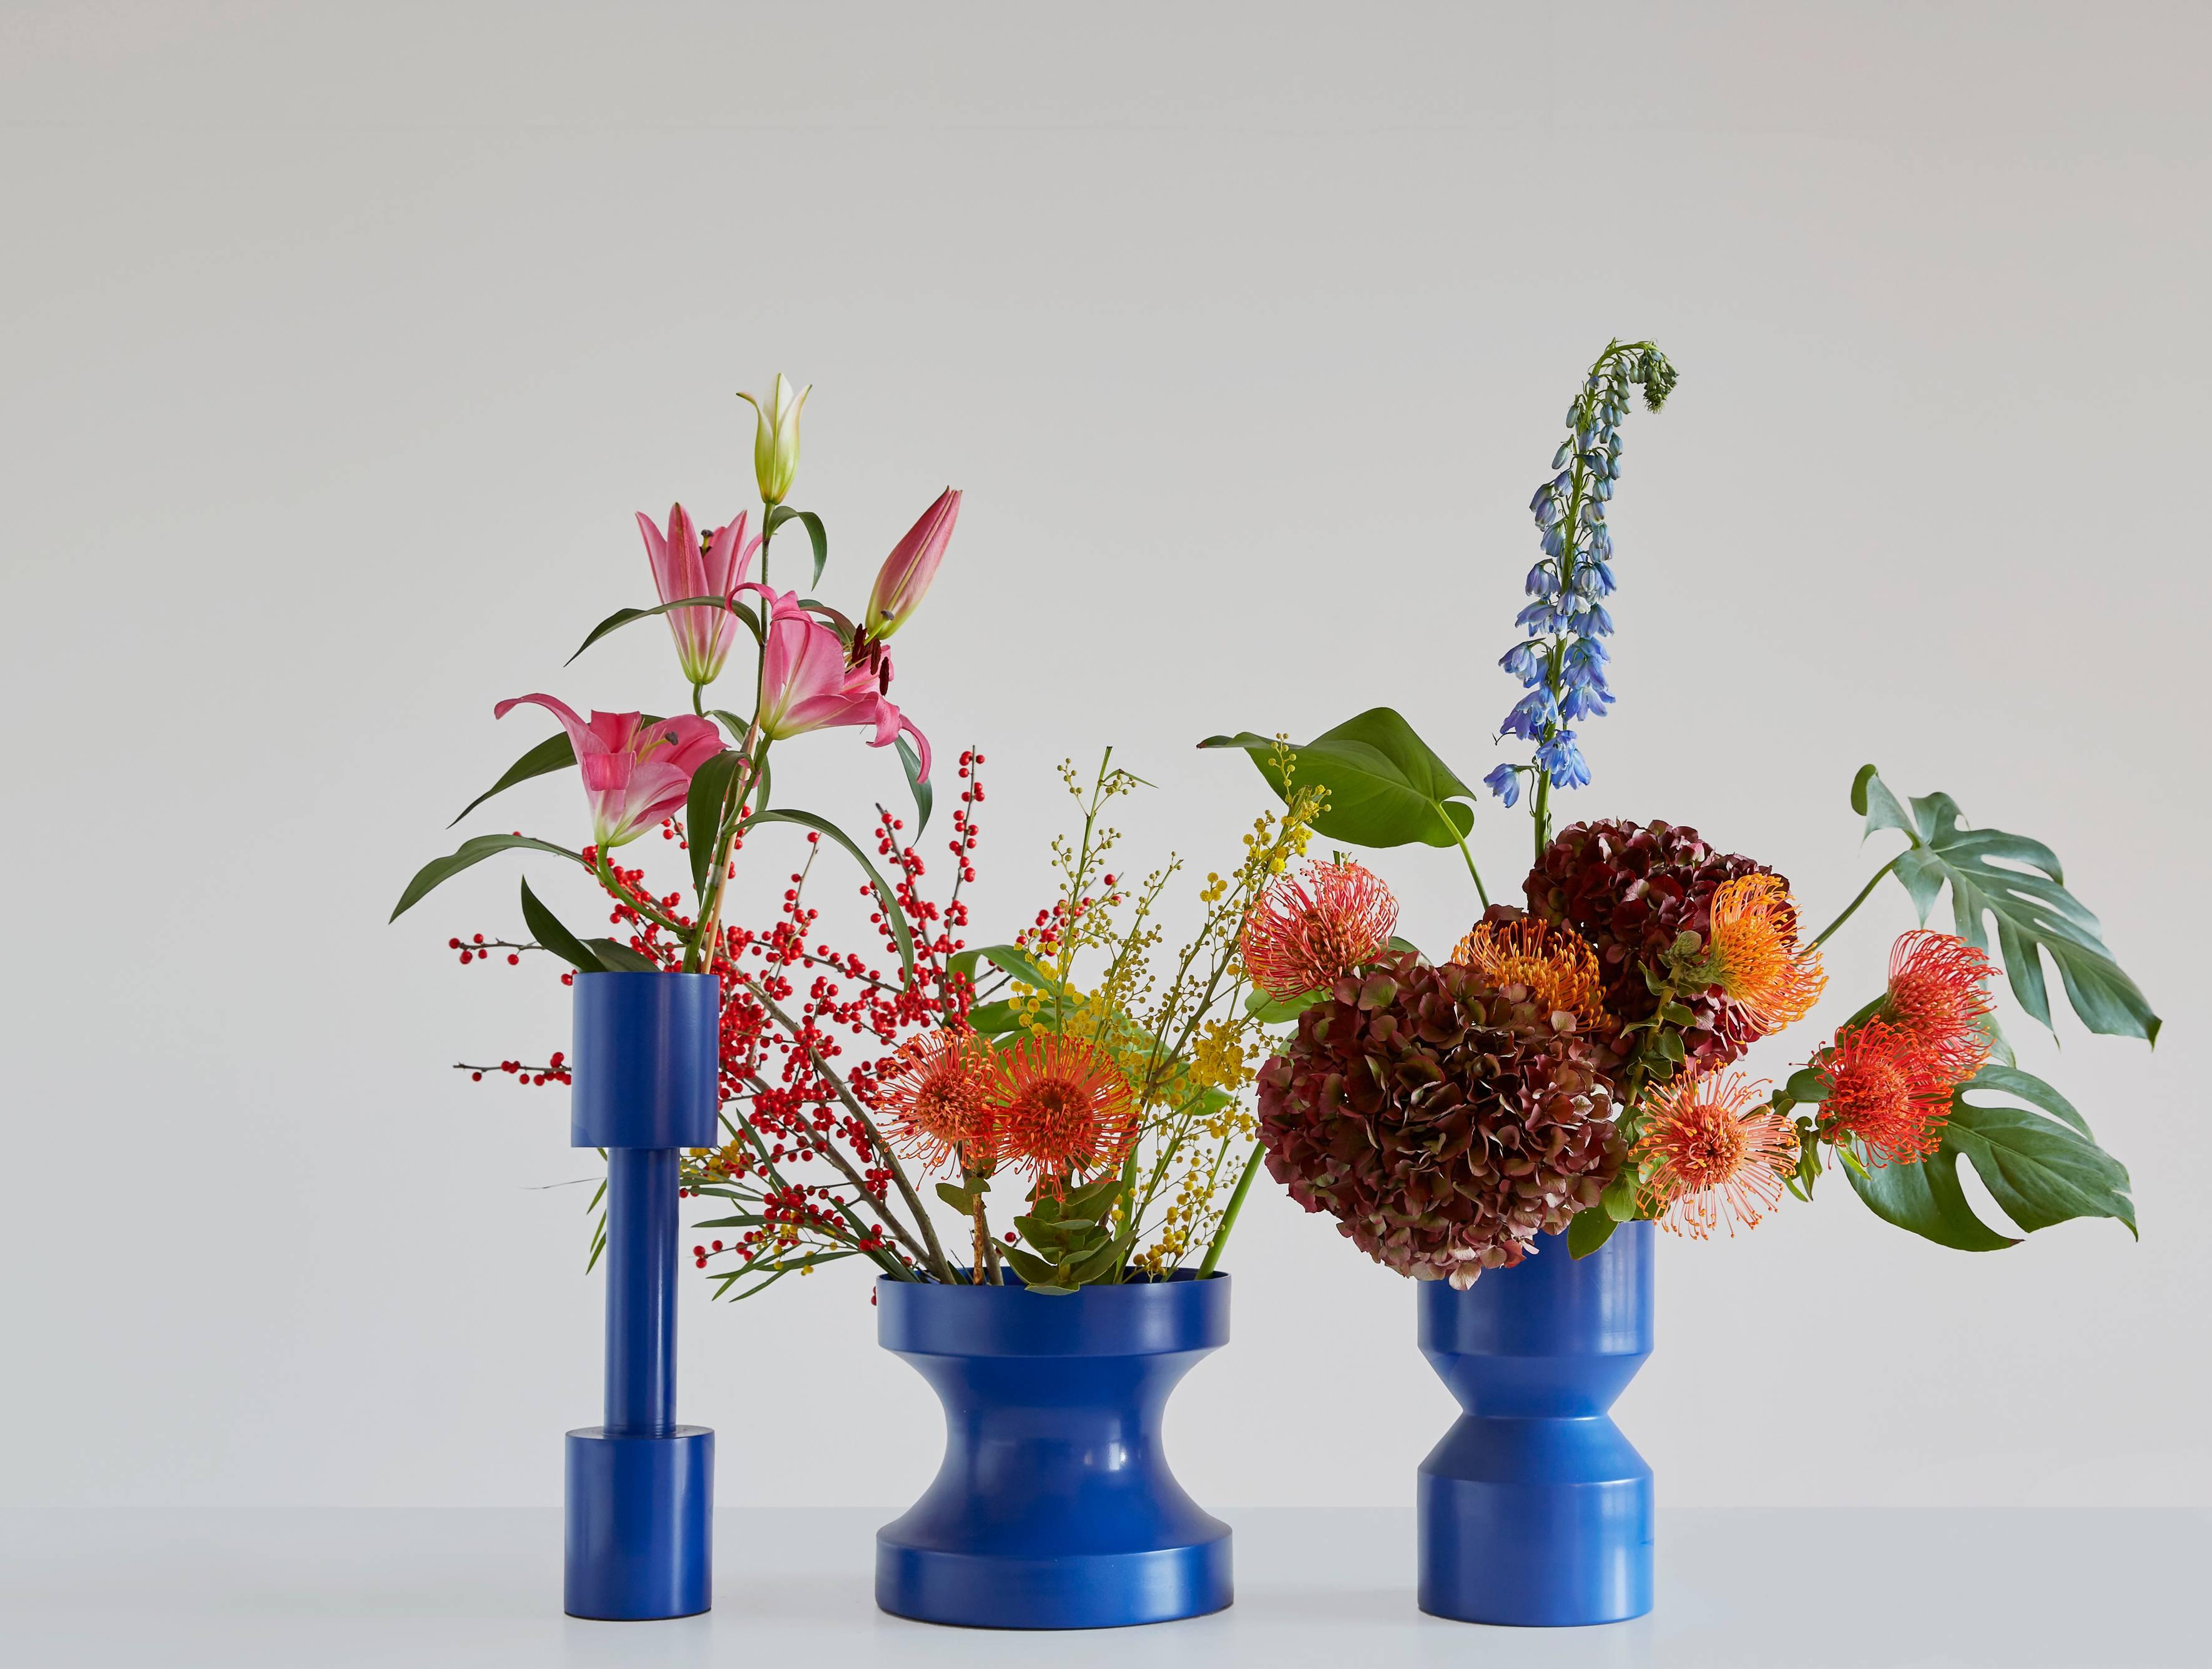 Indian 21st Century Contemporary Design: Aluminum Minimal Cir-Cut Vase in Blue For Sale